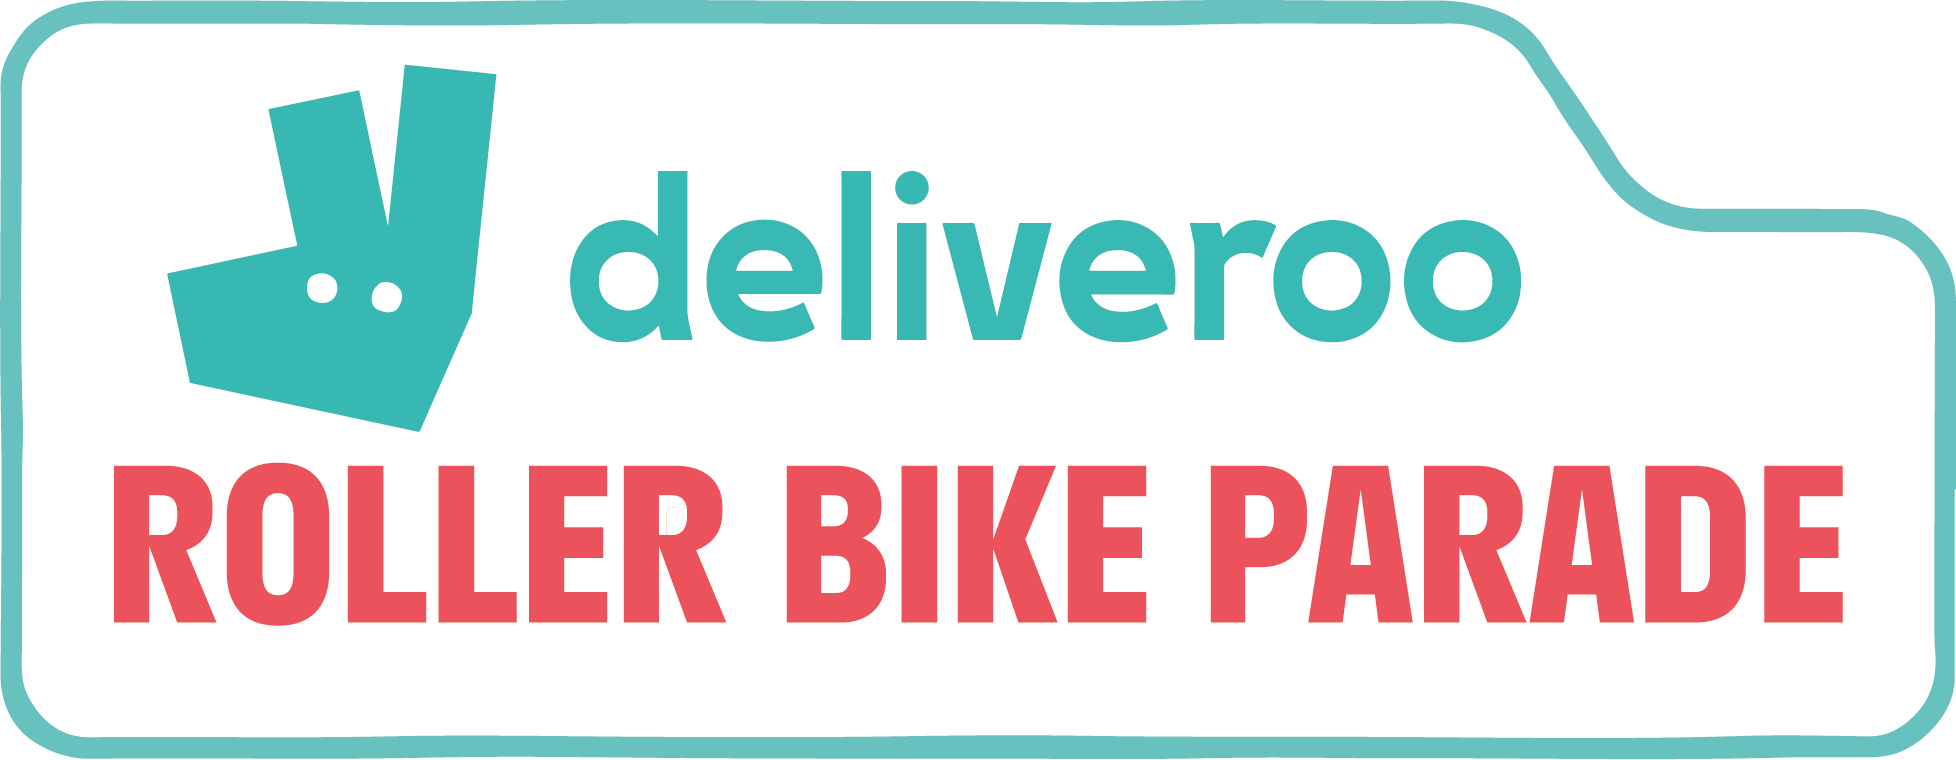 Deliveroo Roller Bike Parade